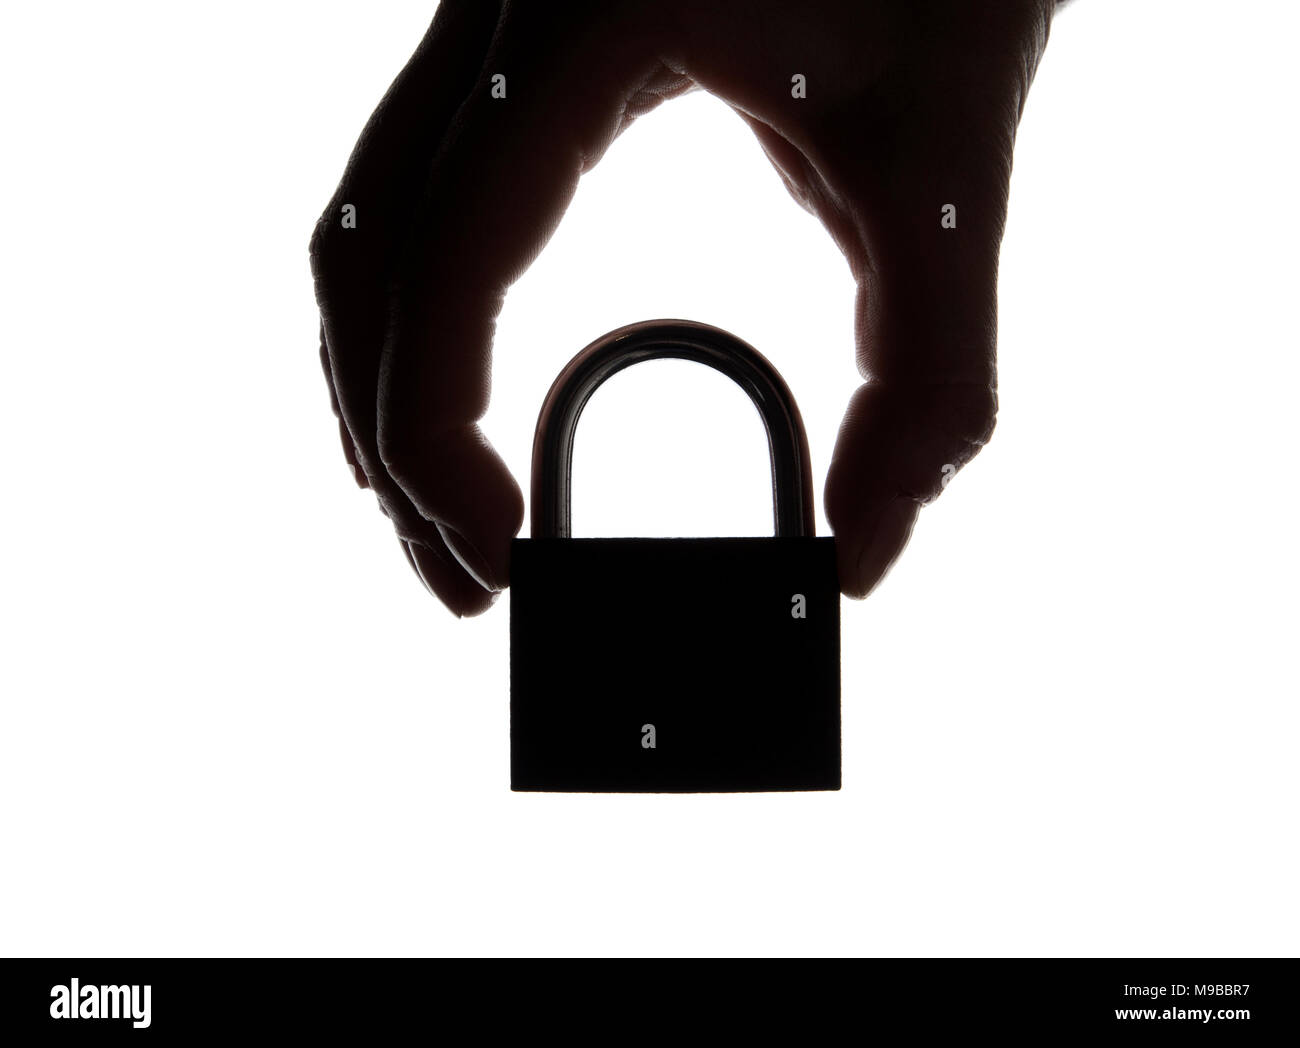 Silhouette d'une main tenant un cadenas sur un arrière-plan uni, blanc. Sécurité et confidentialité. Banque D'Images